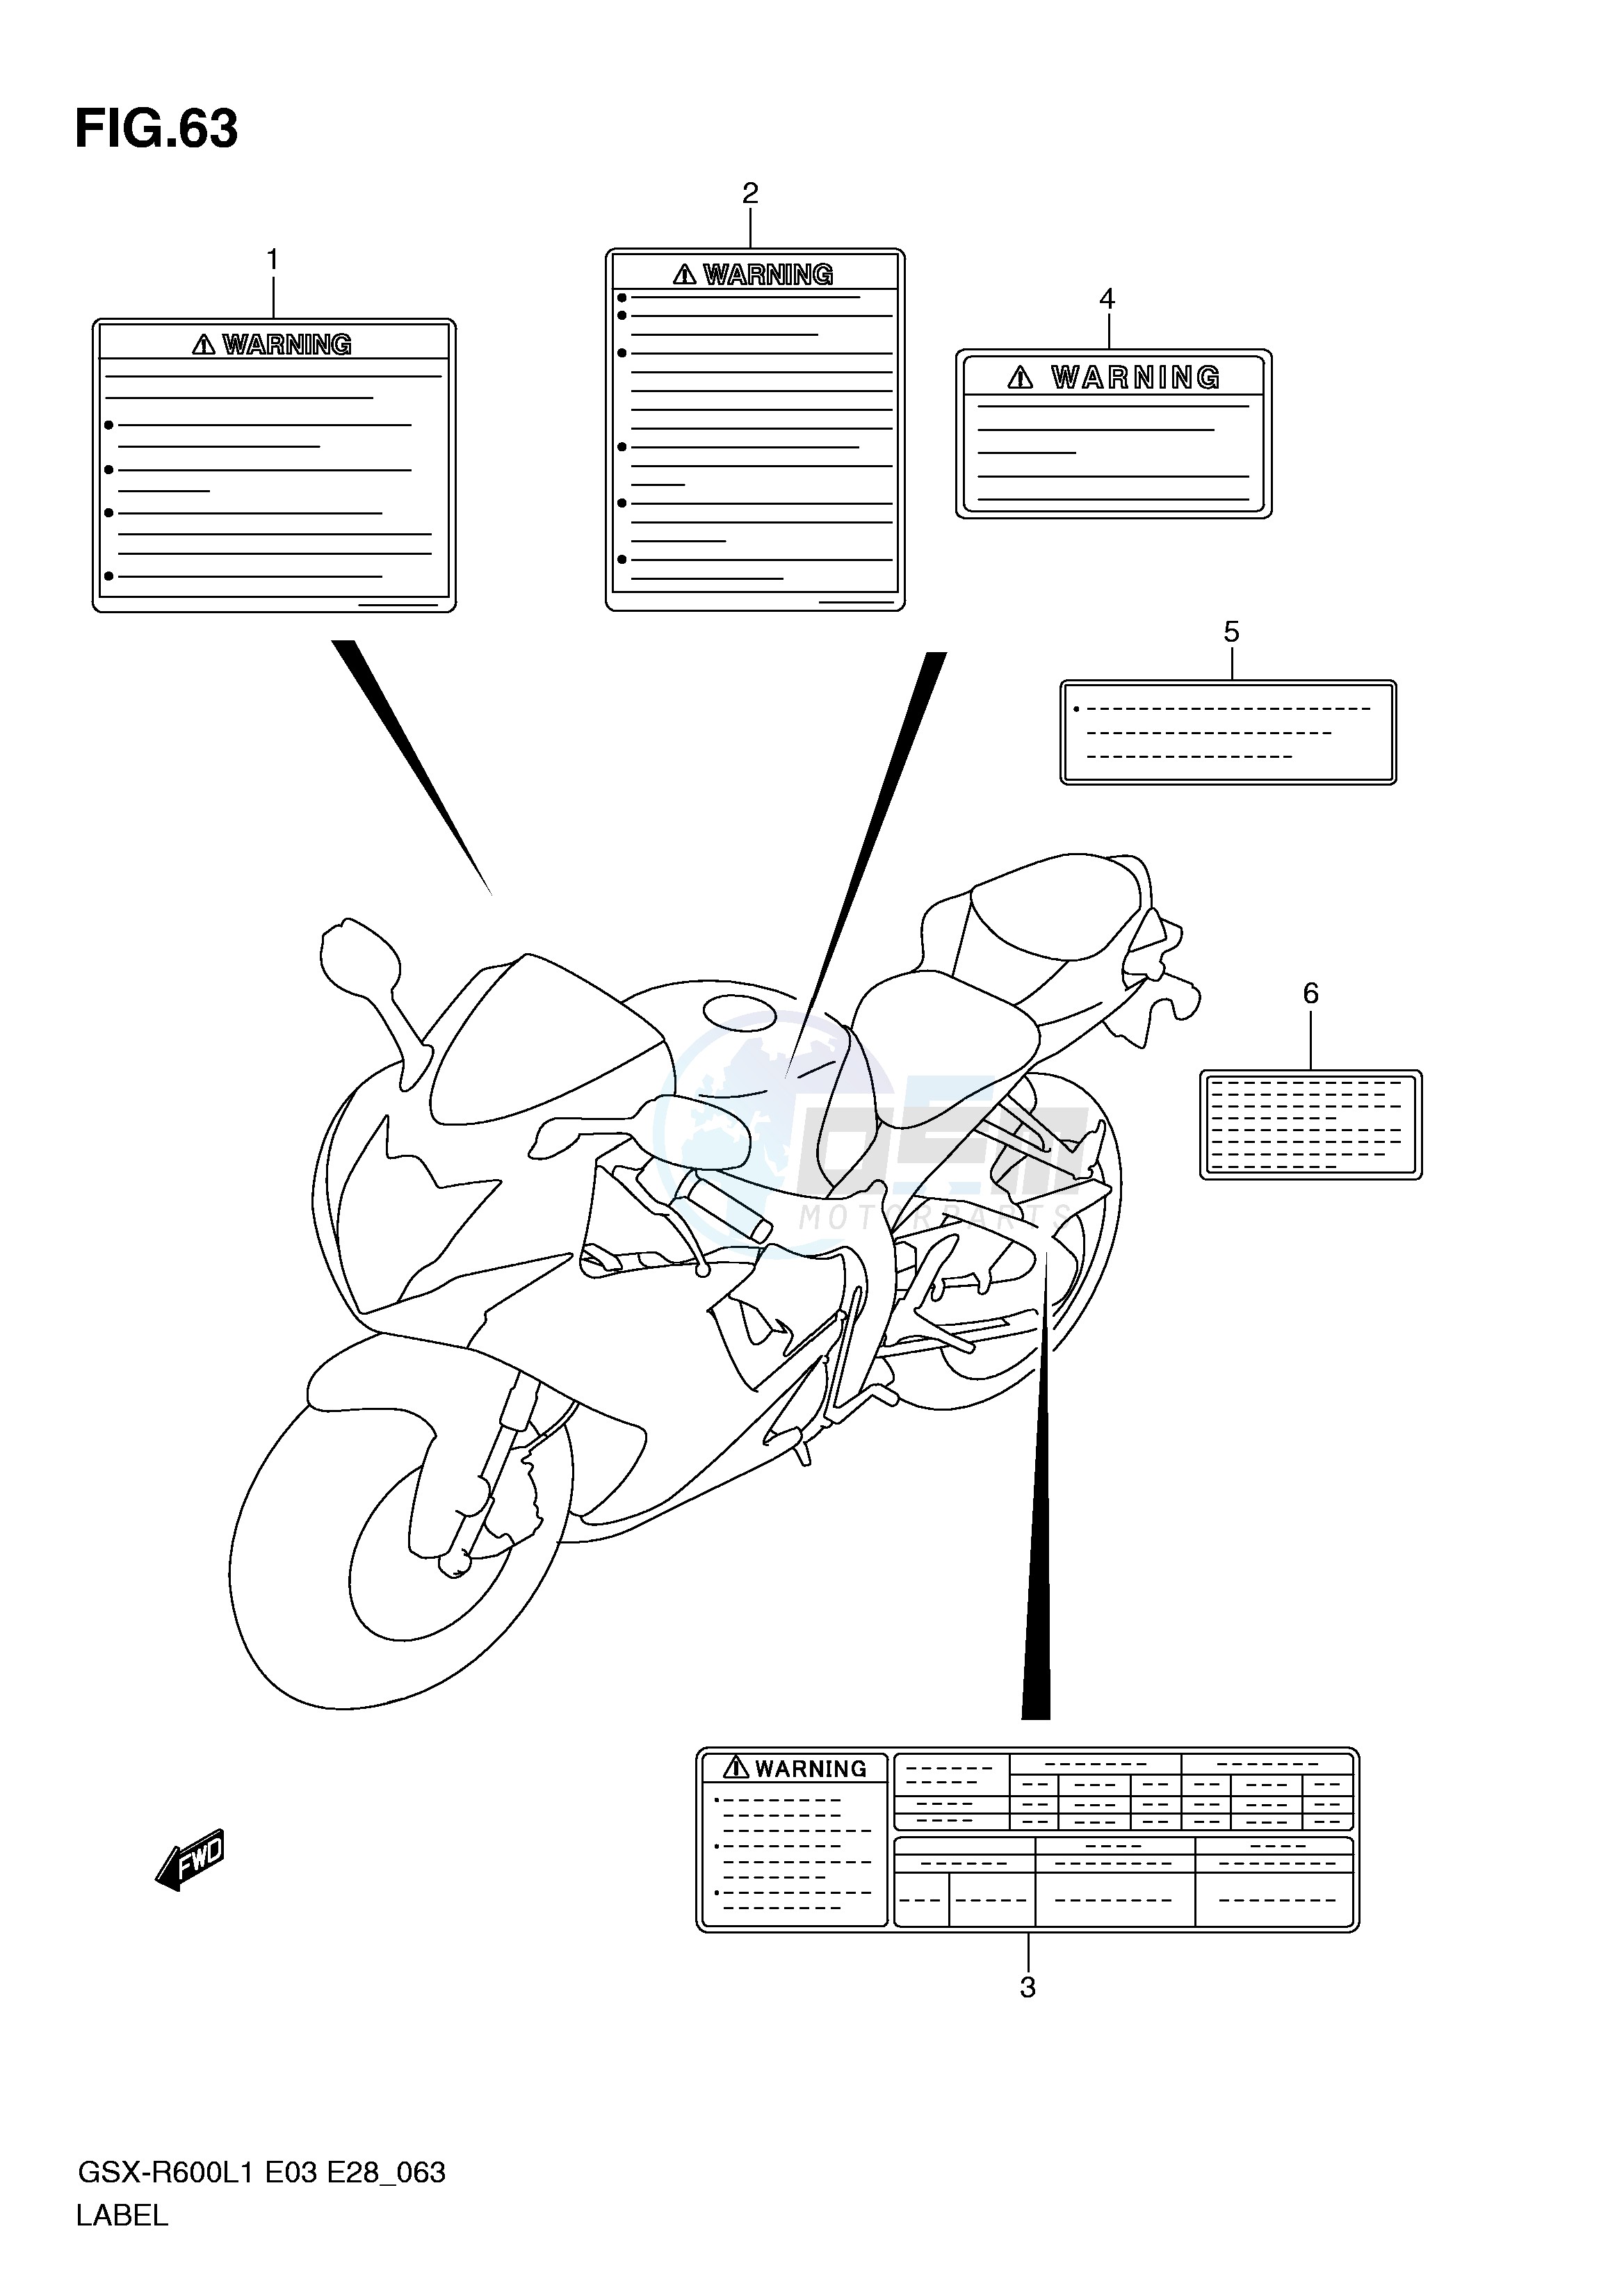 LABEL (GSX-R600L1 E3) blueprint